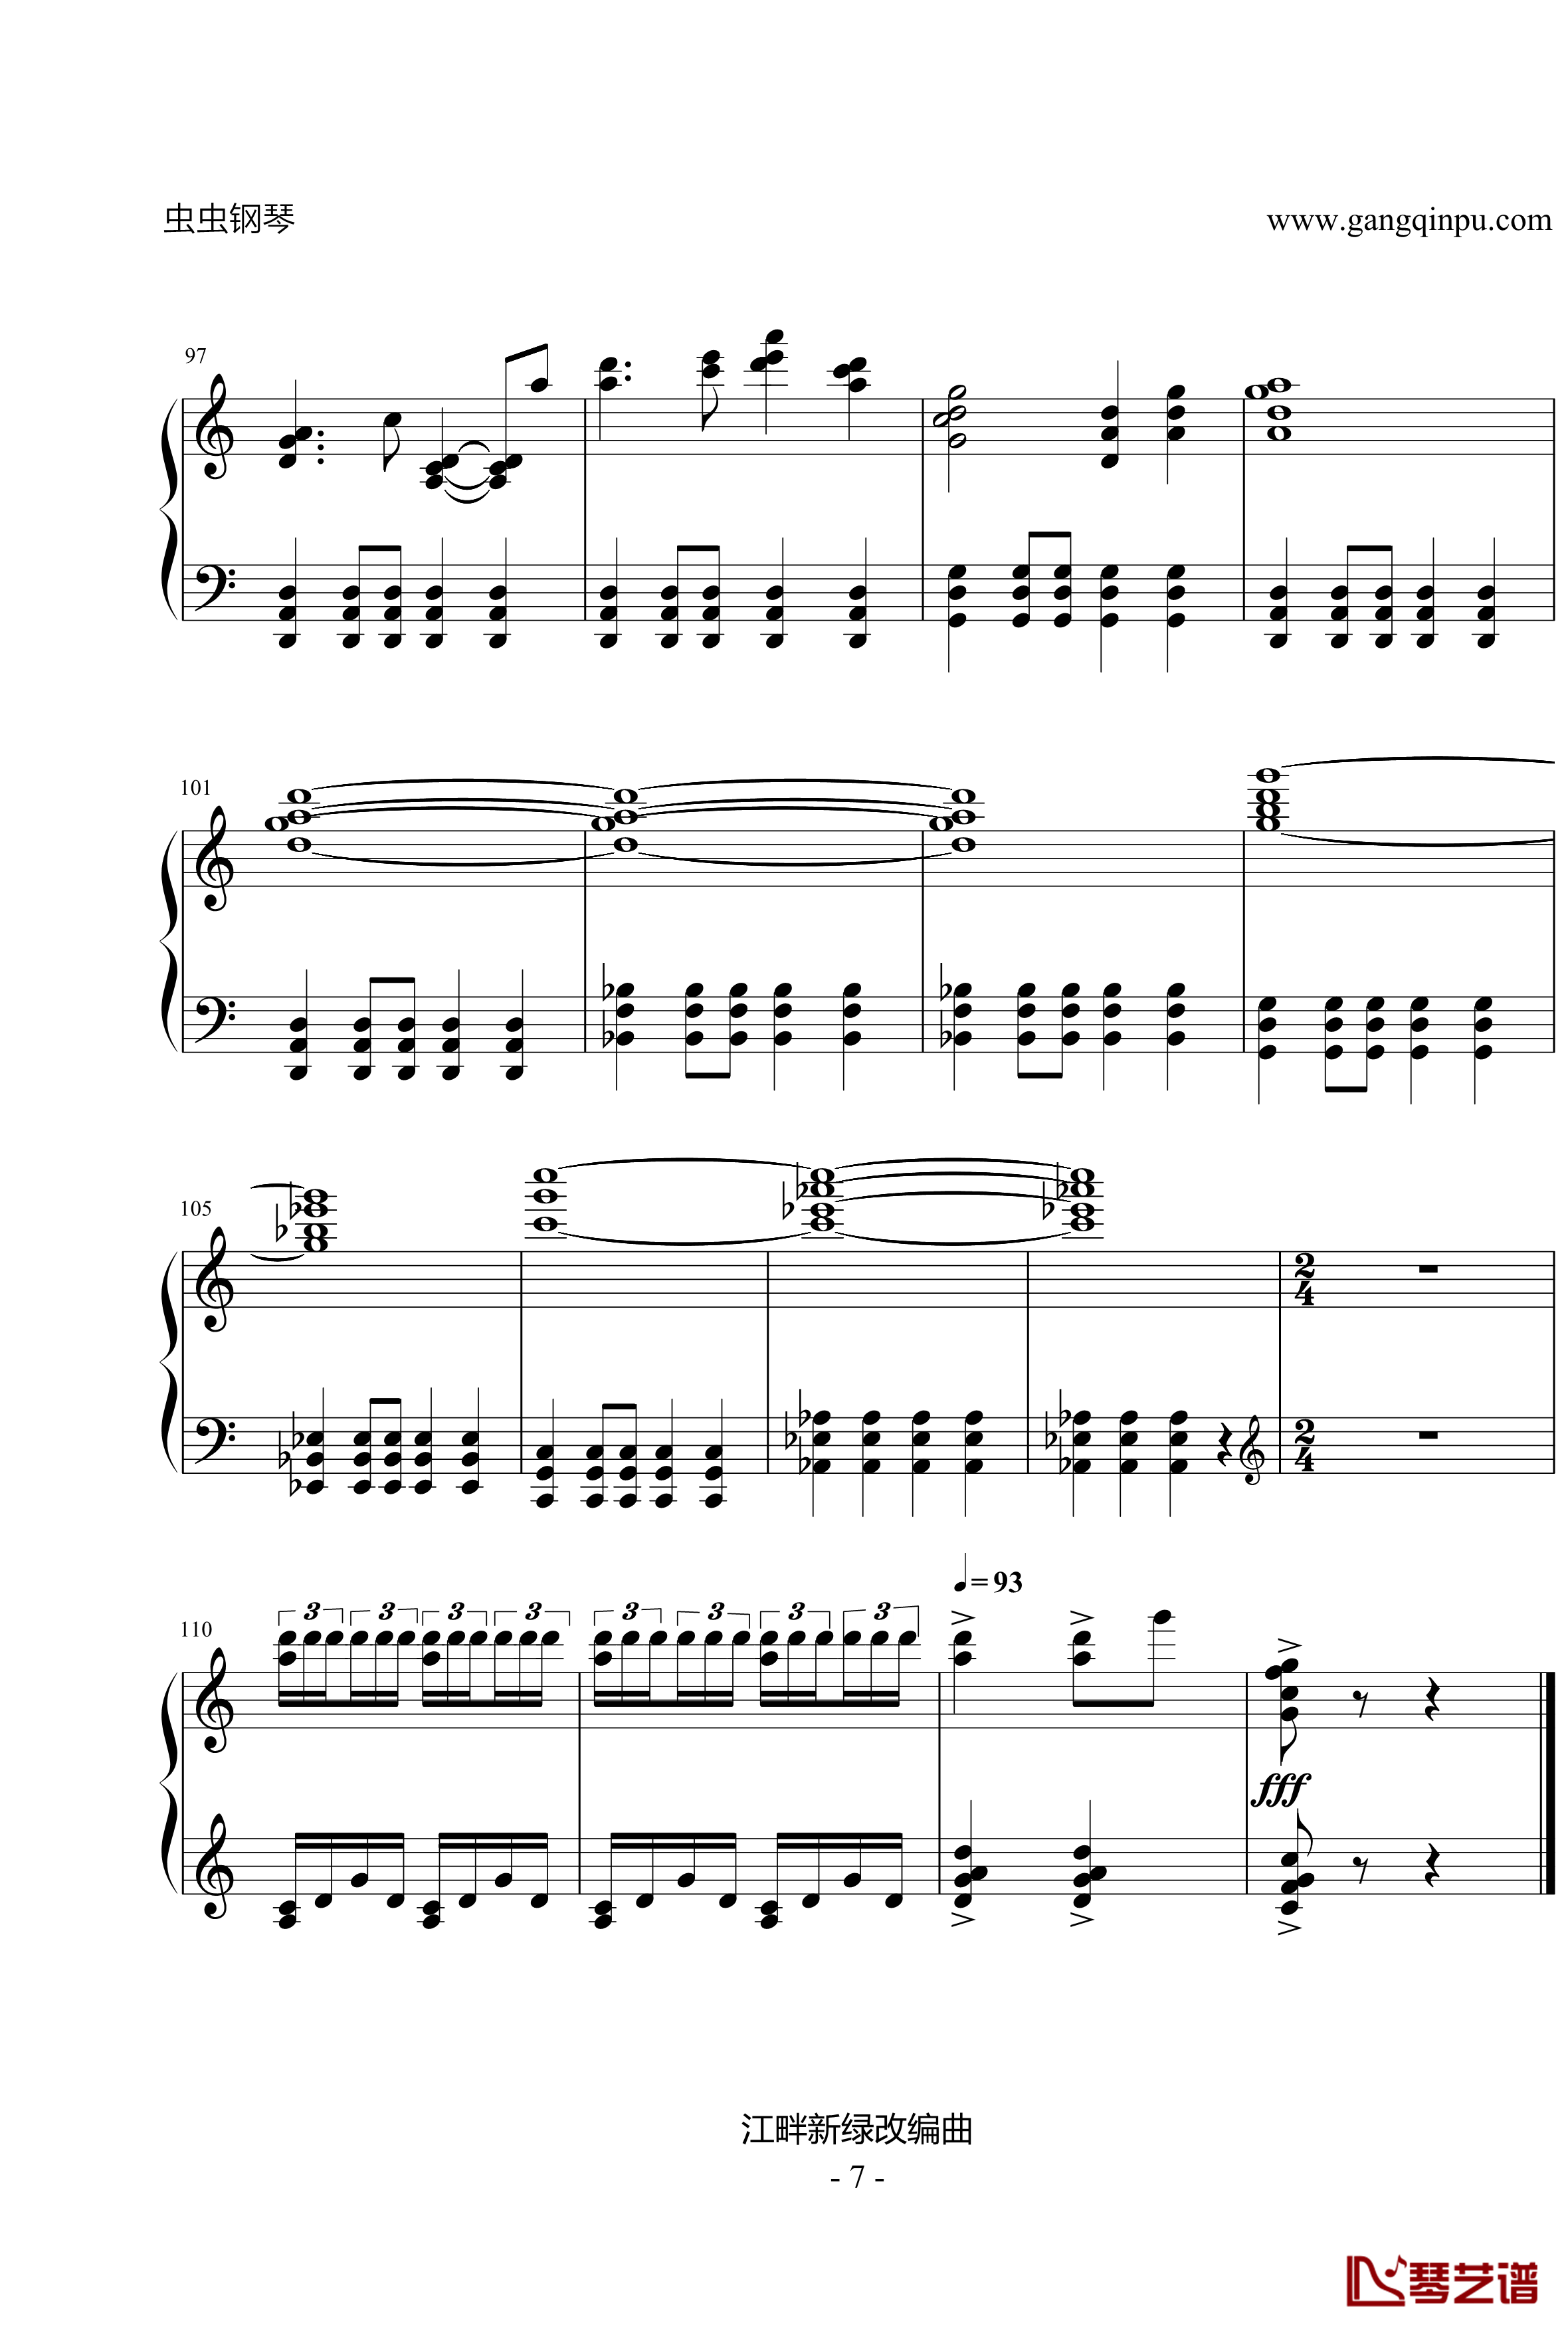 金箍棒钢琴谱-龚琳娜7